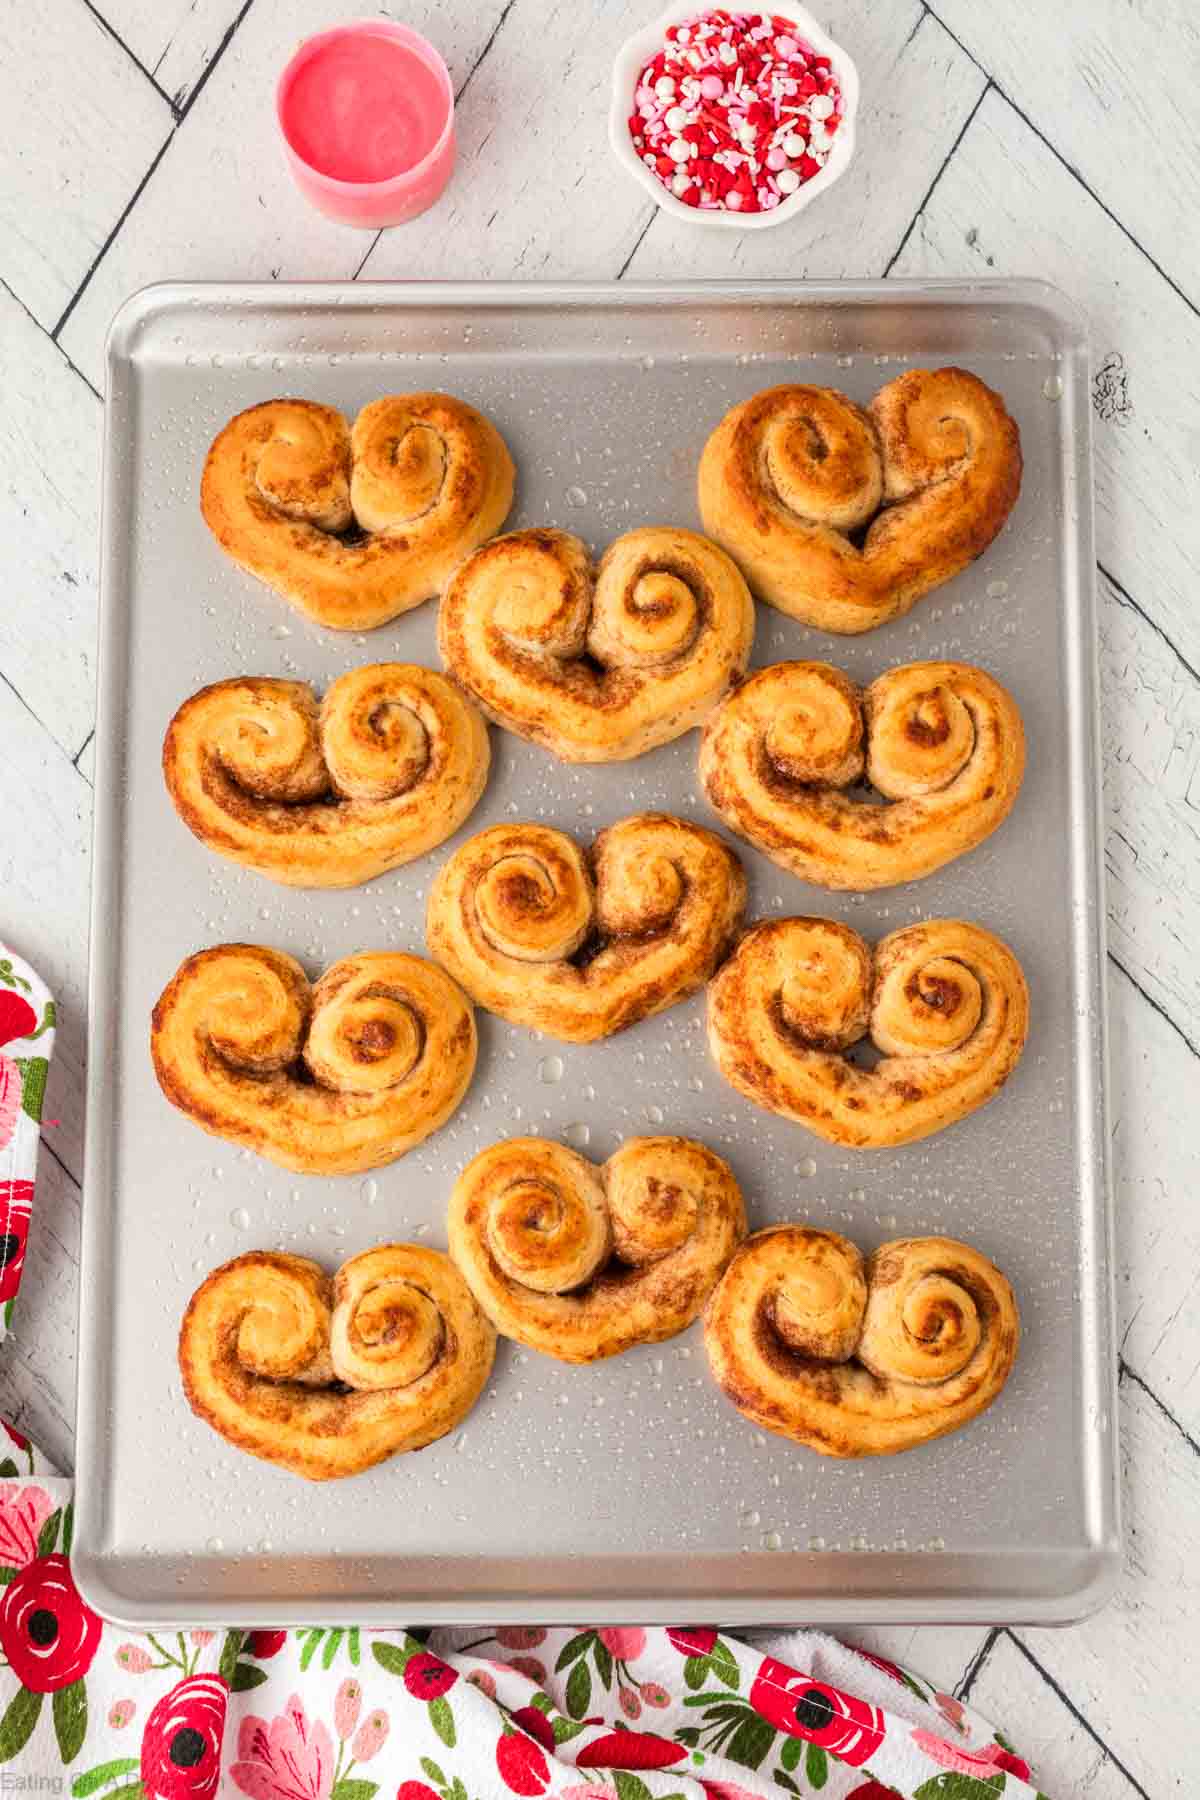 Baked heart shaped cinnamon rolls on a baking sheet